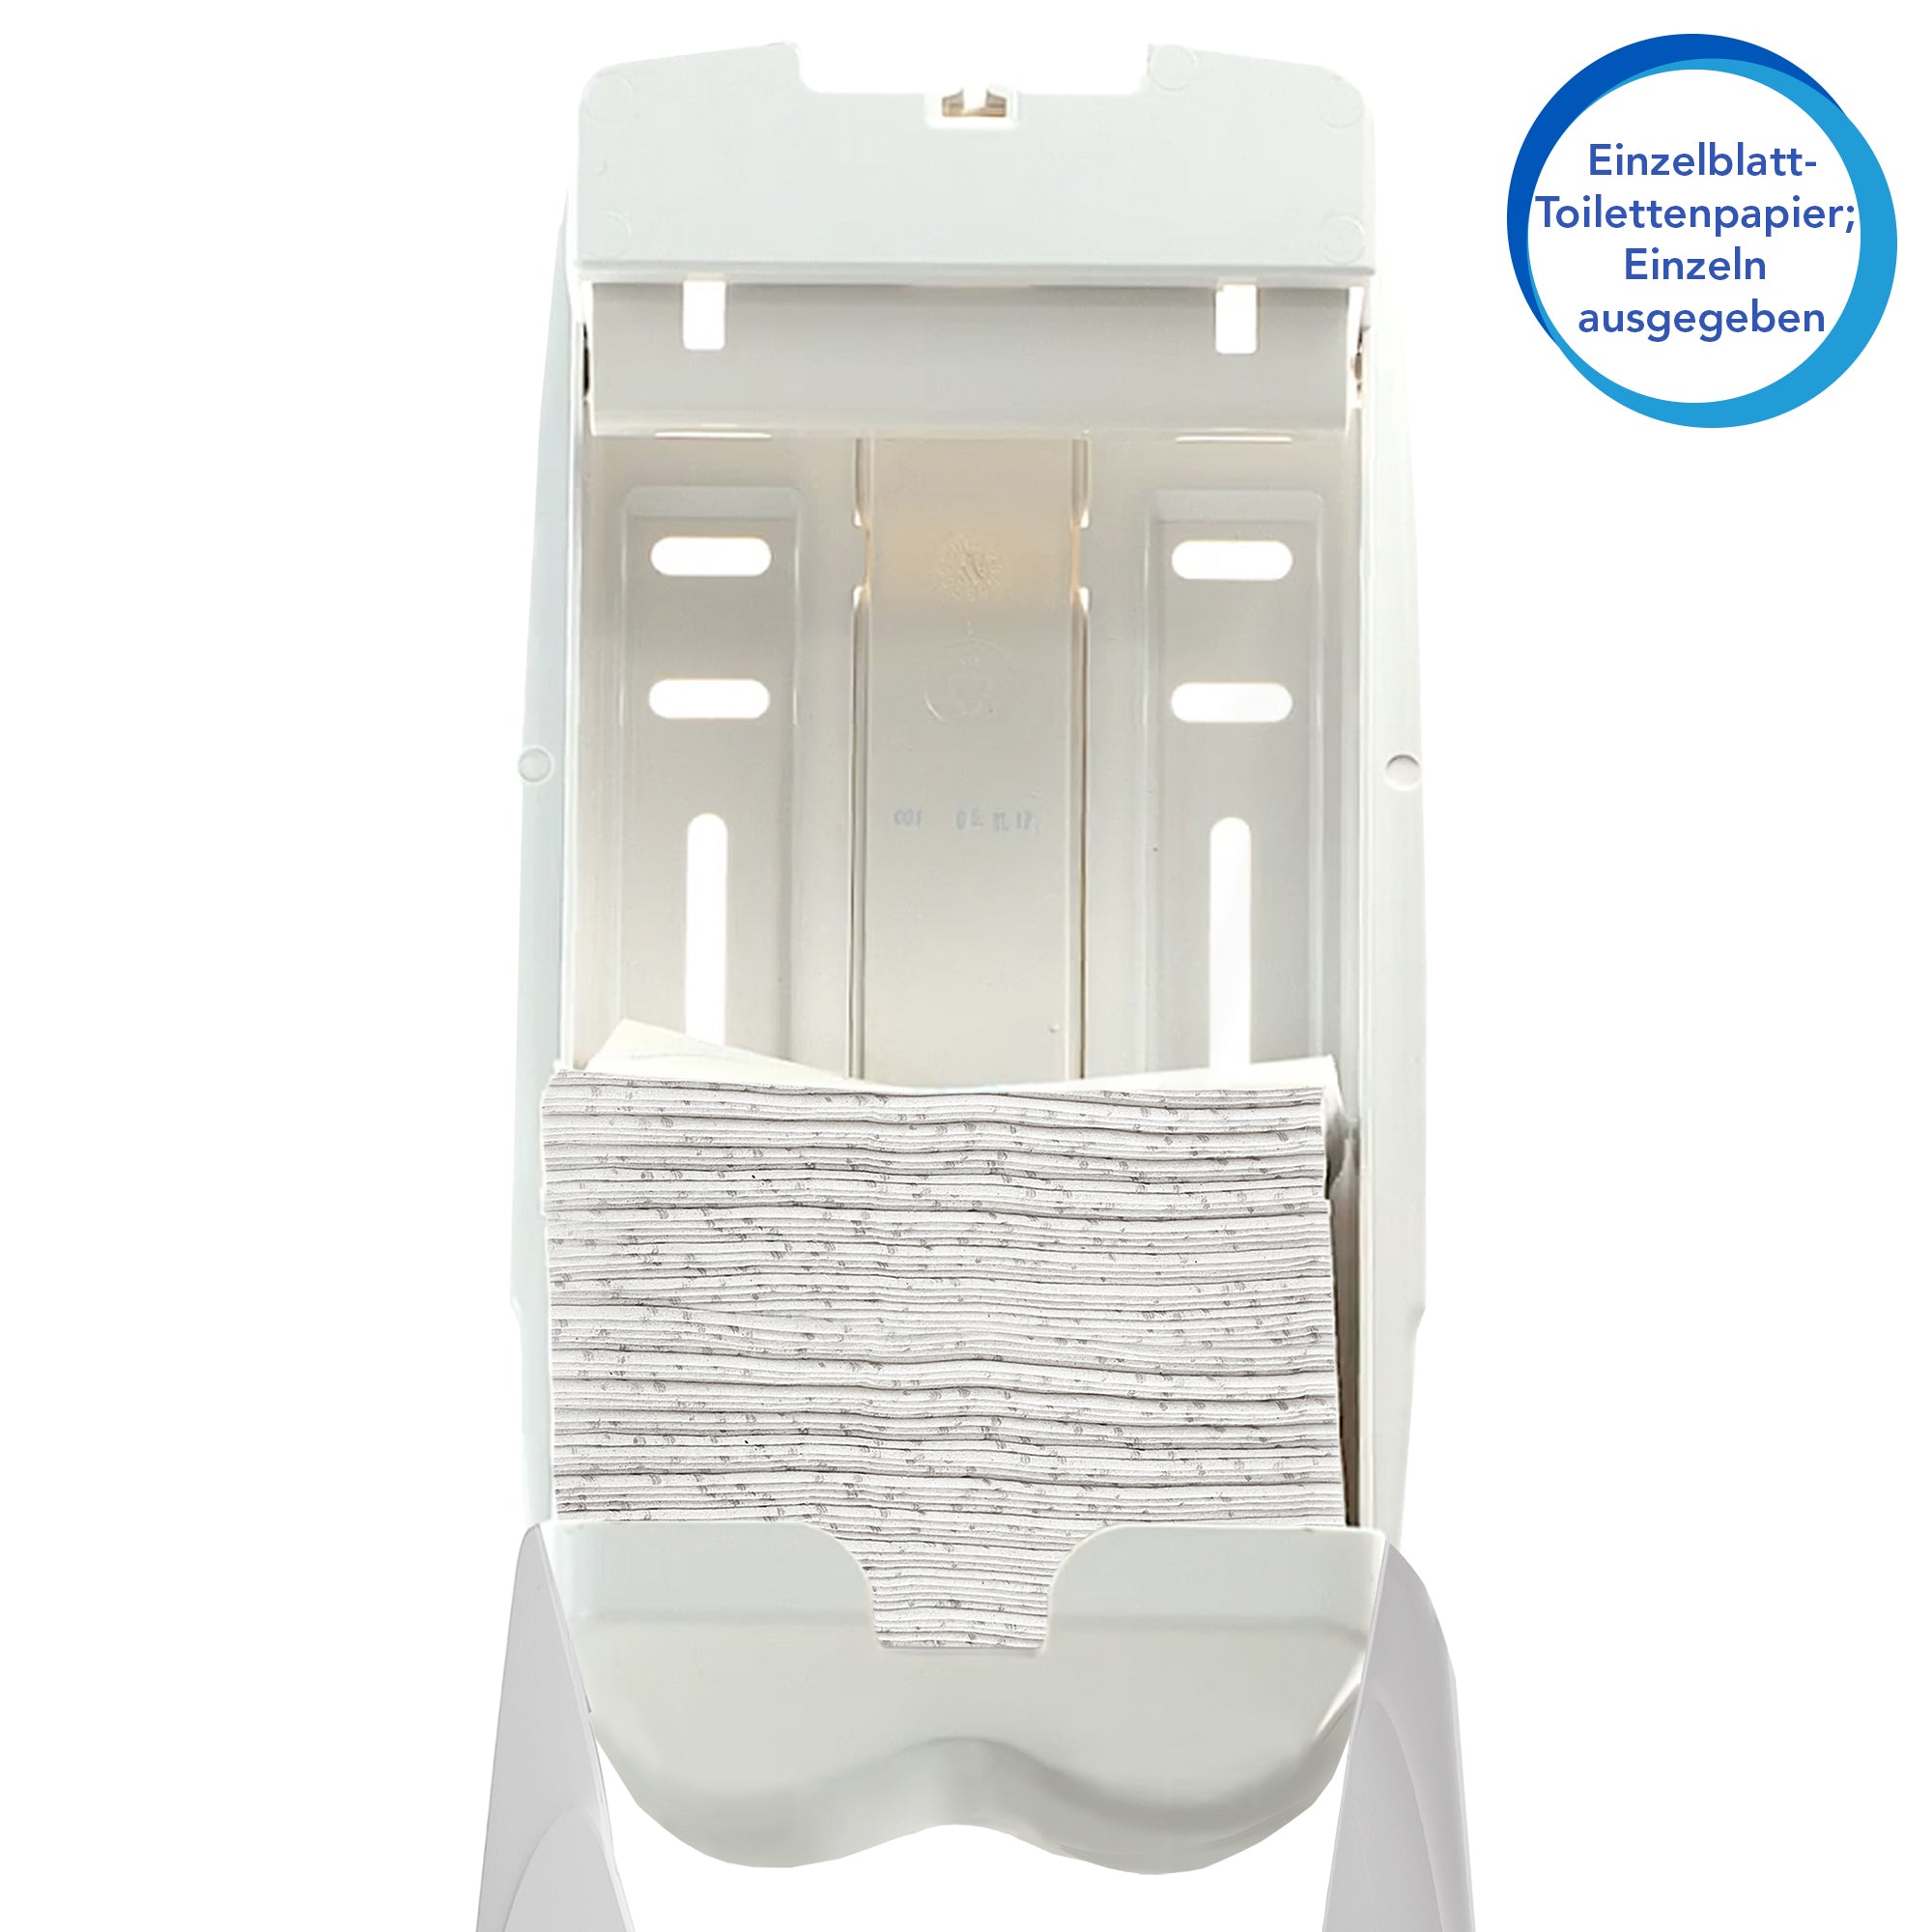 Scott® Control™ Einzelblatt-Toilettenpapier 8508 – 2-lagiges Toilettenpapier – 36 Packungen x 250 Blatt (9.000 Blatt)